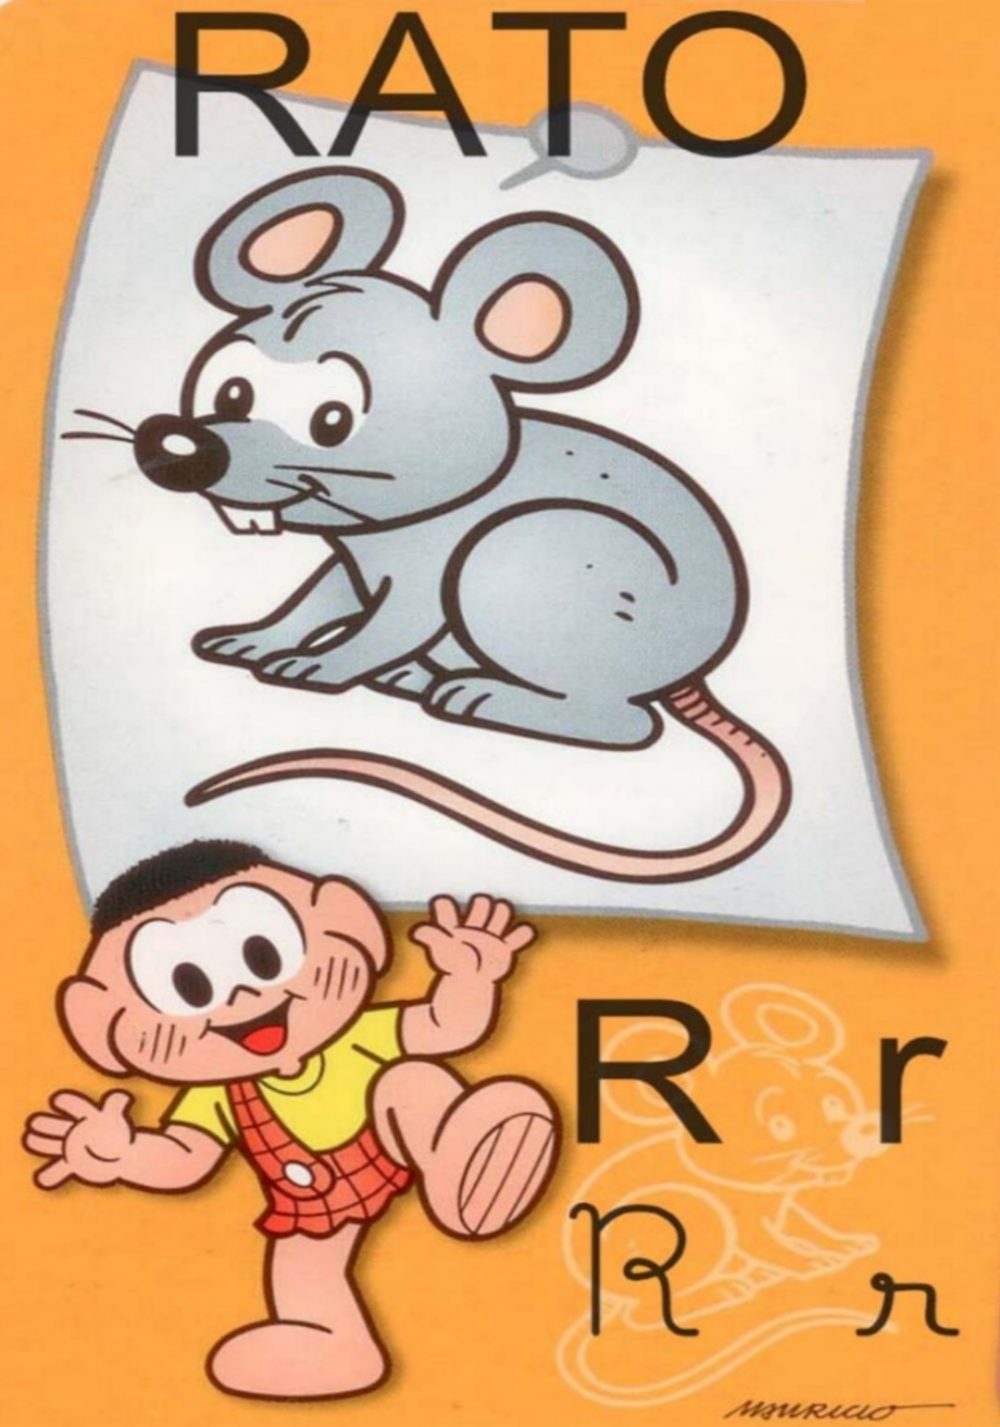 Alfabeto Ilustrado da Turma da Mônica: Letra R